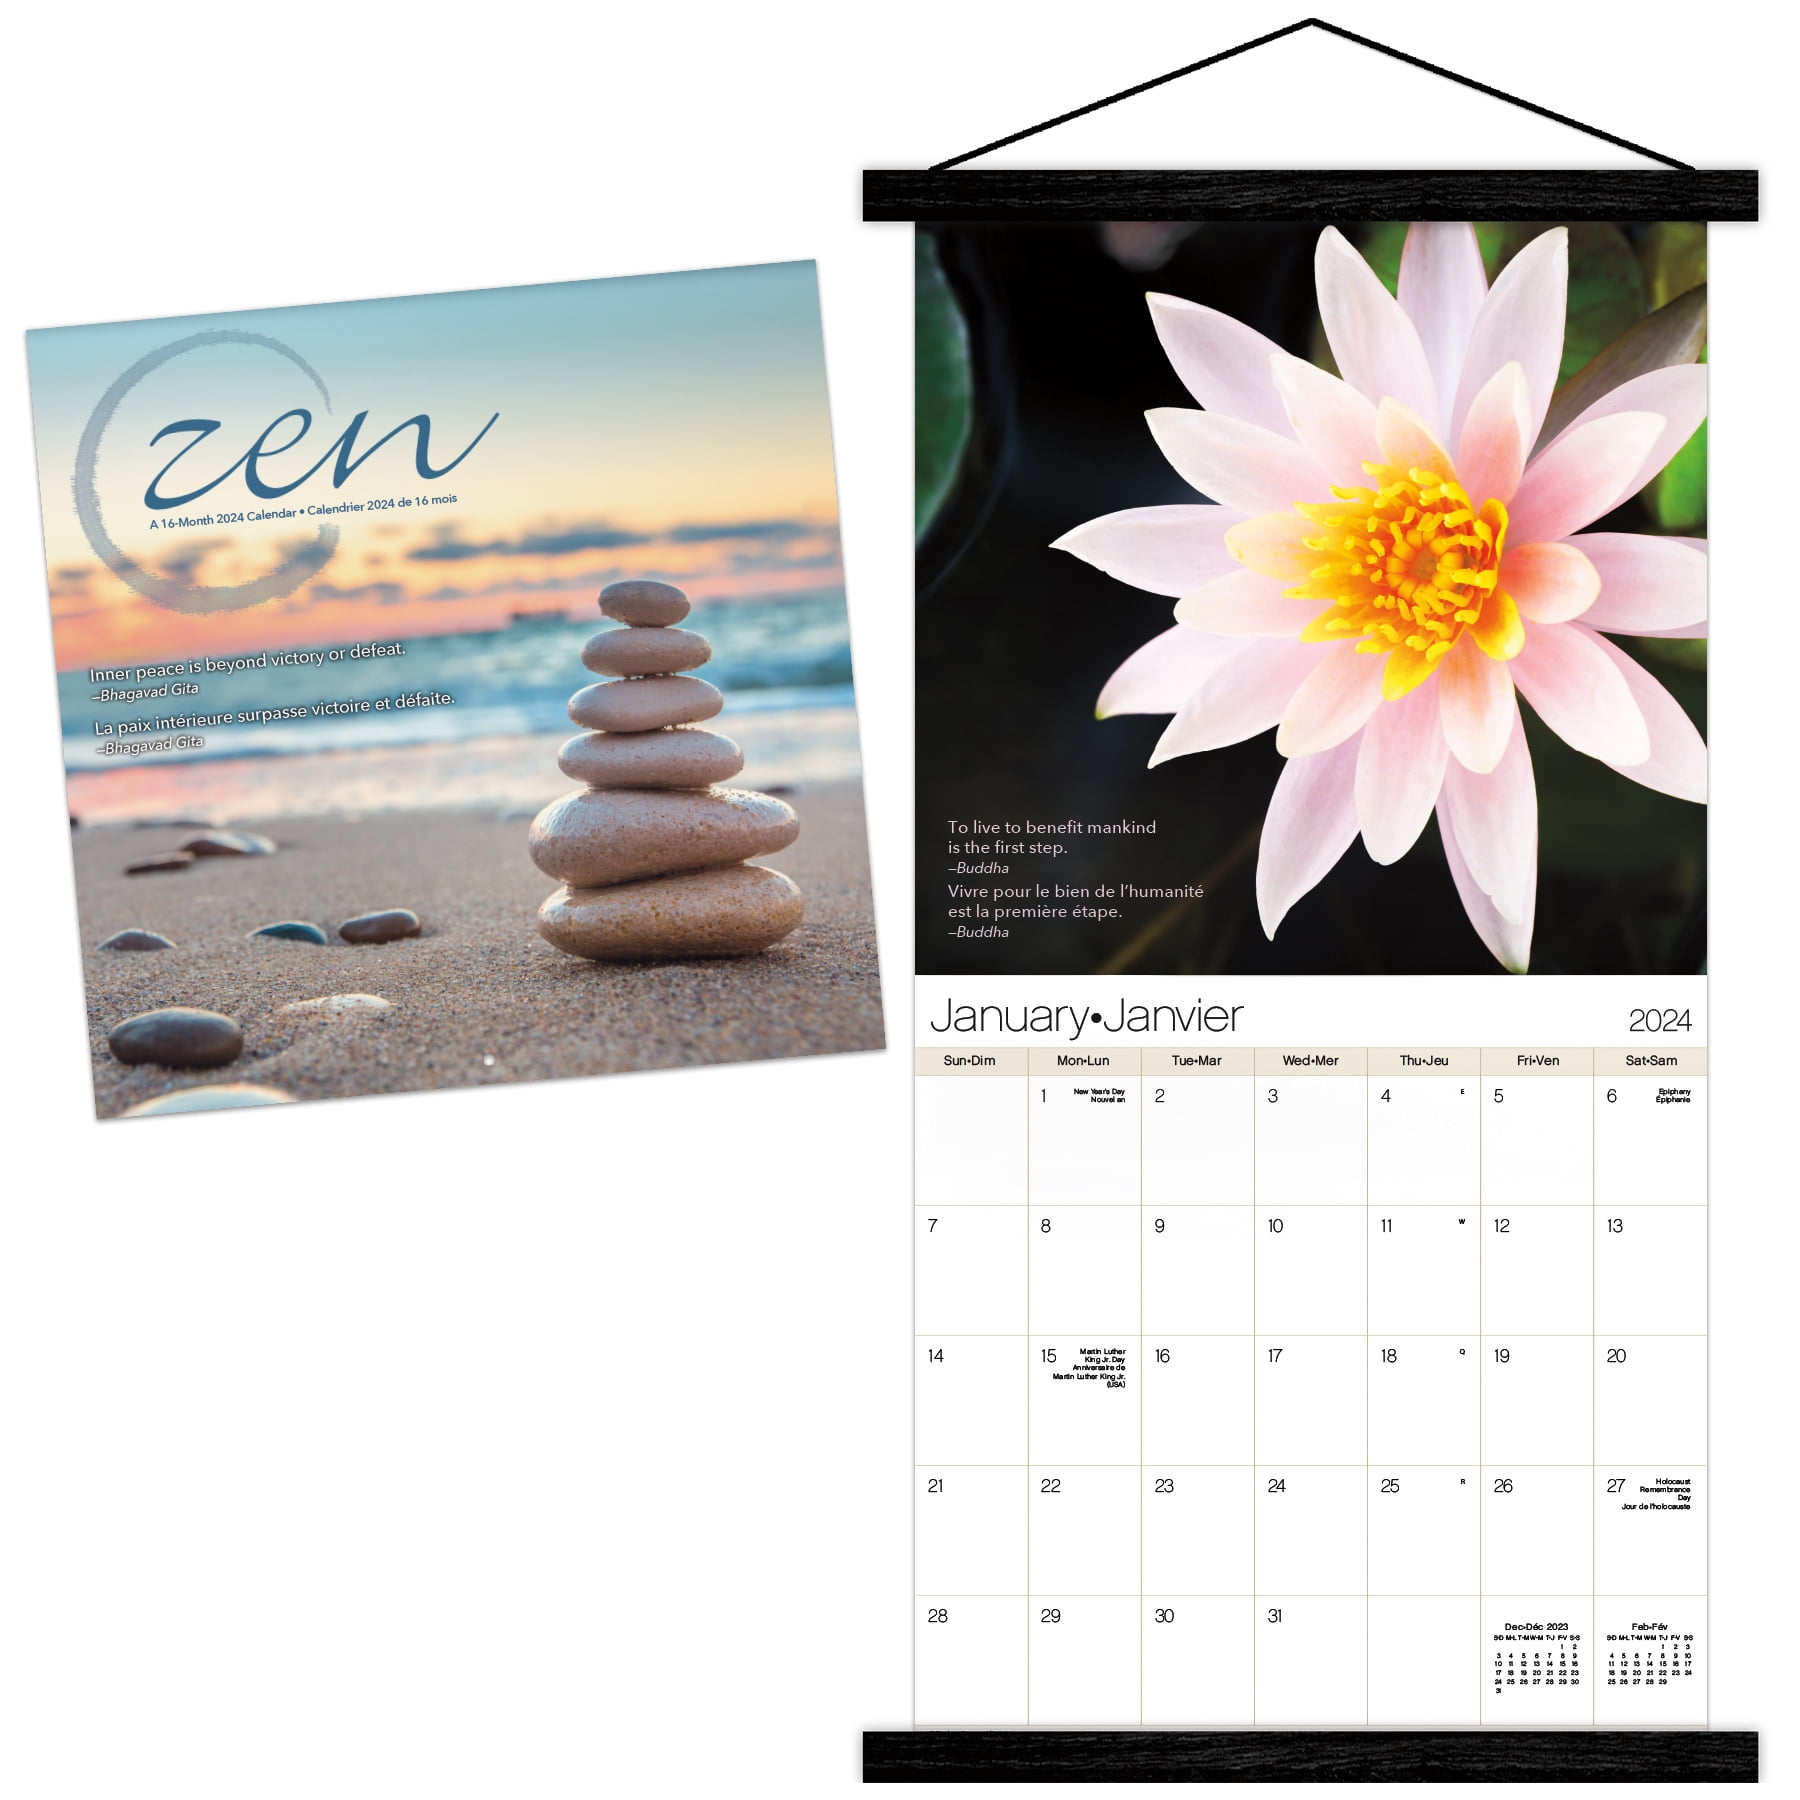 Trends International 2024 Zen Wall Calendar & Magnetic Frame 